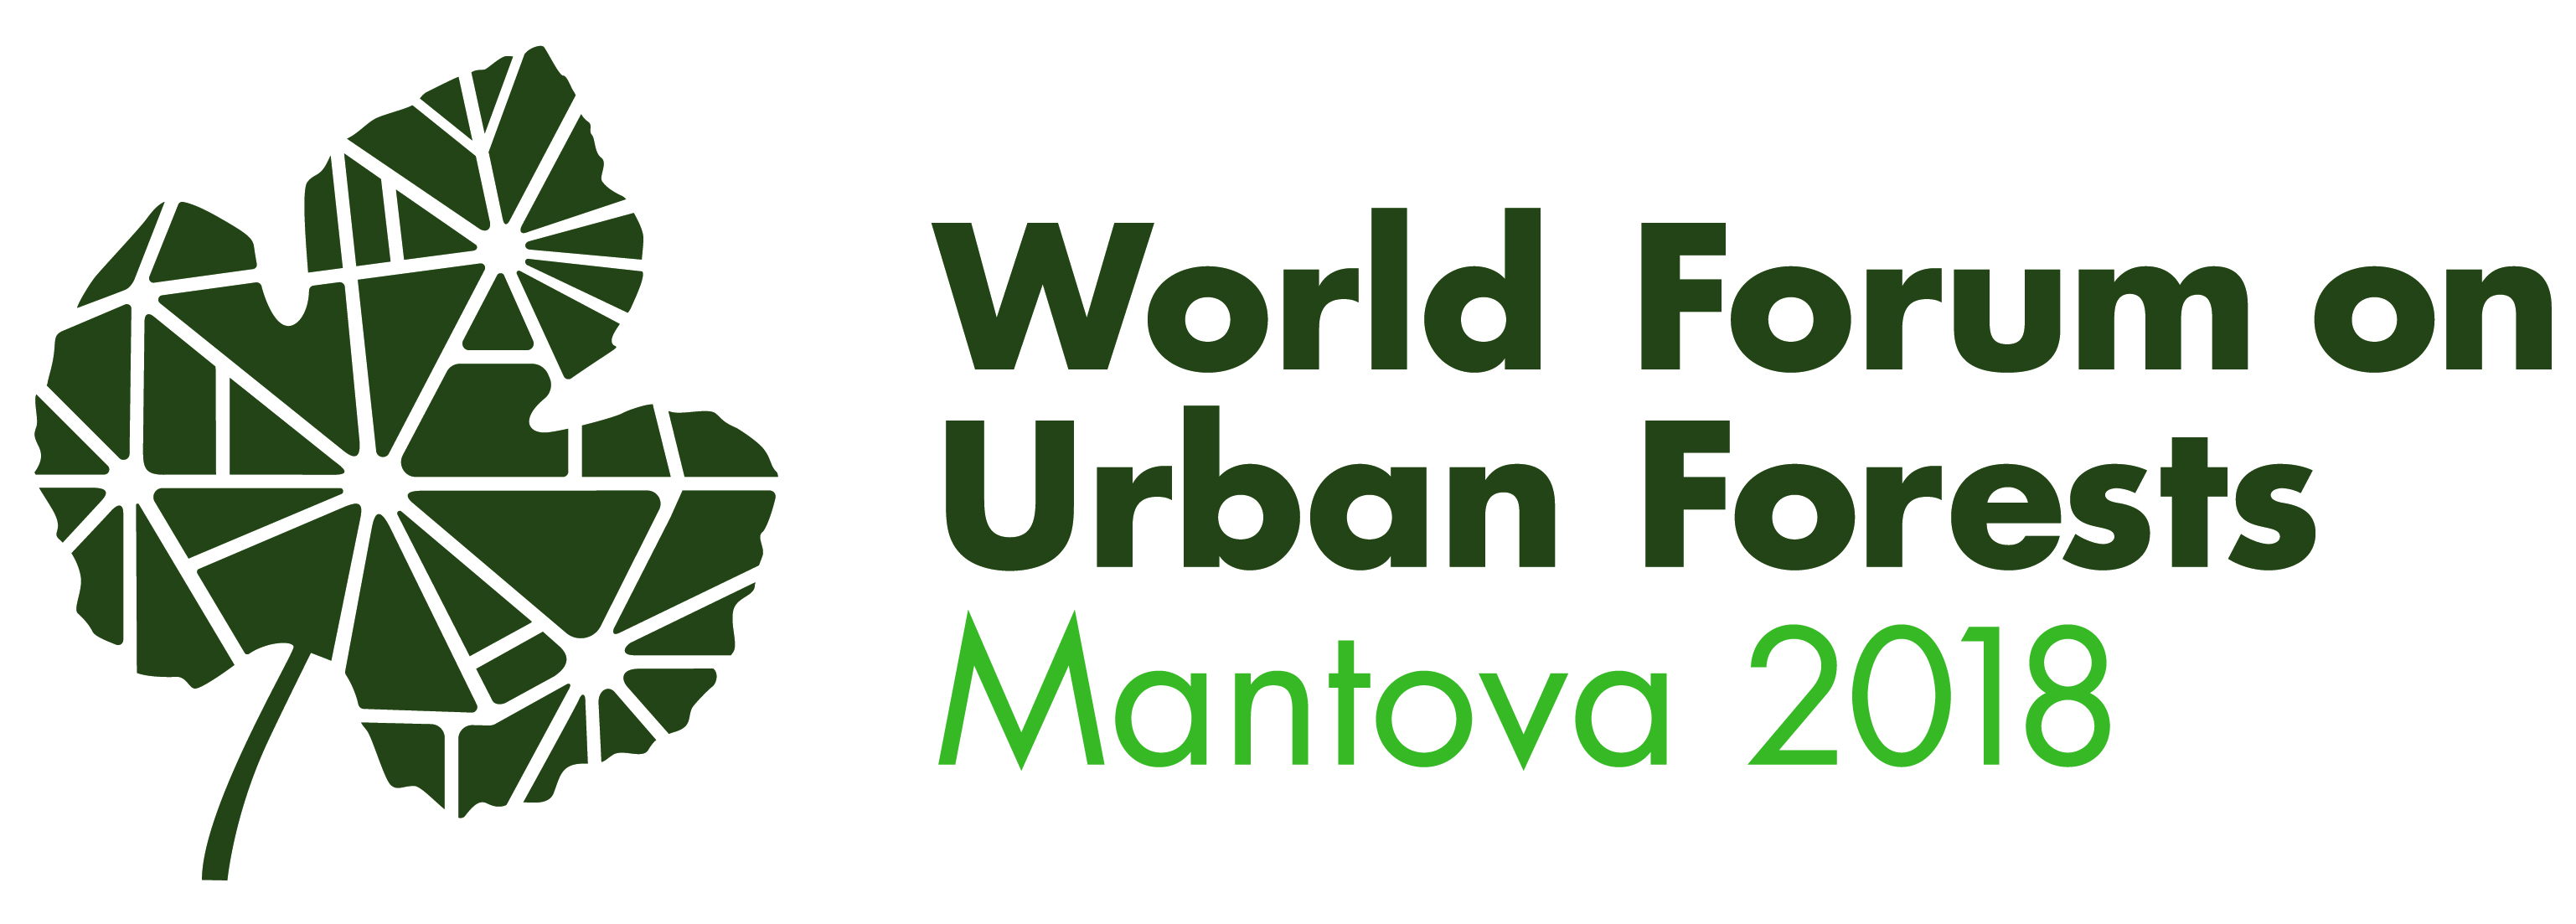 Dal 28 novembre al 1 dicembre a Mantova il primo World Forum on Urban Forests